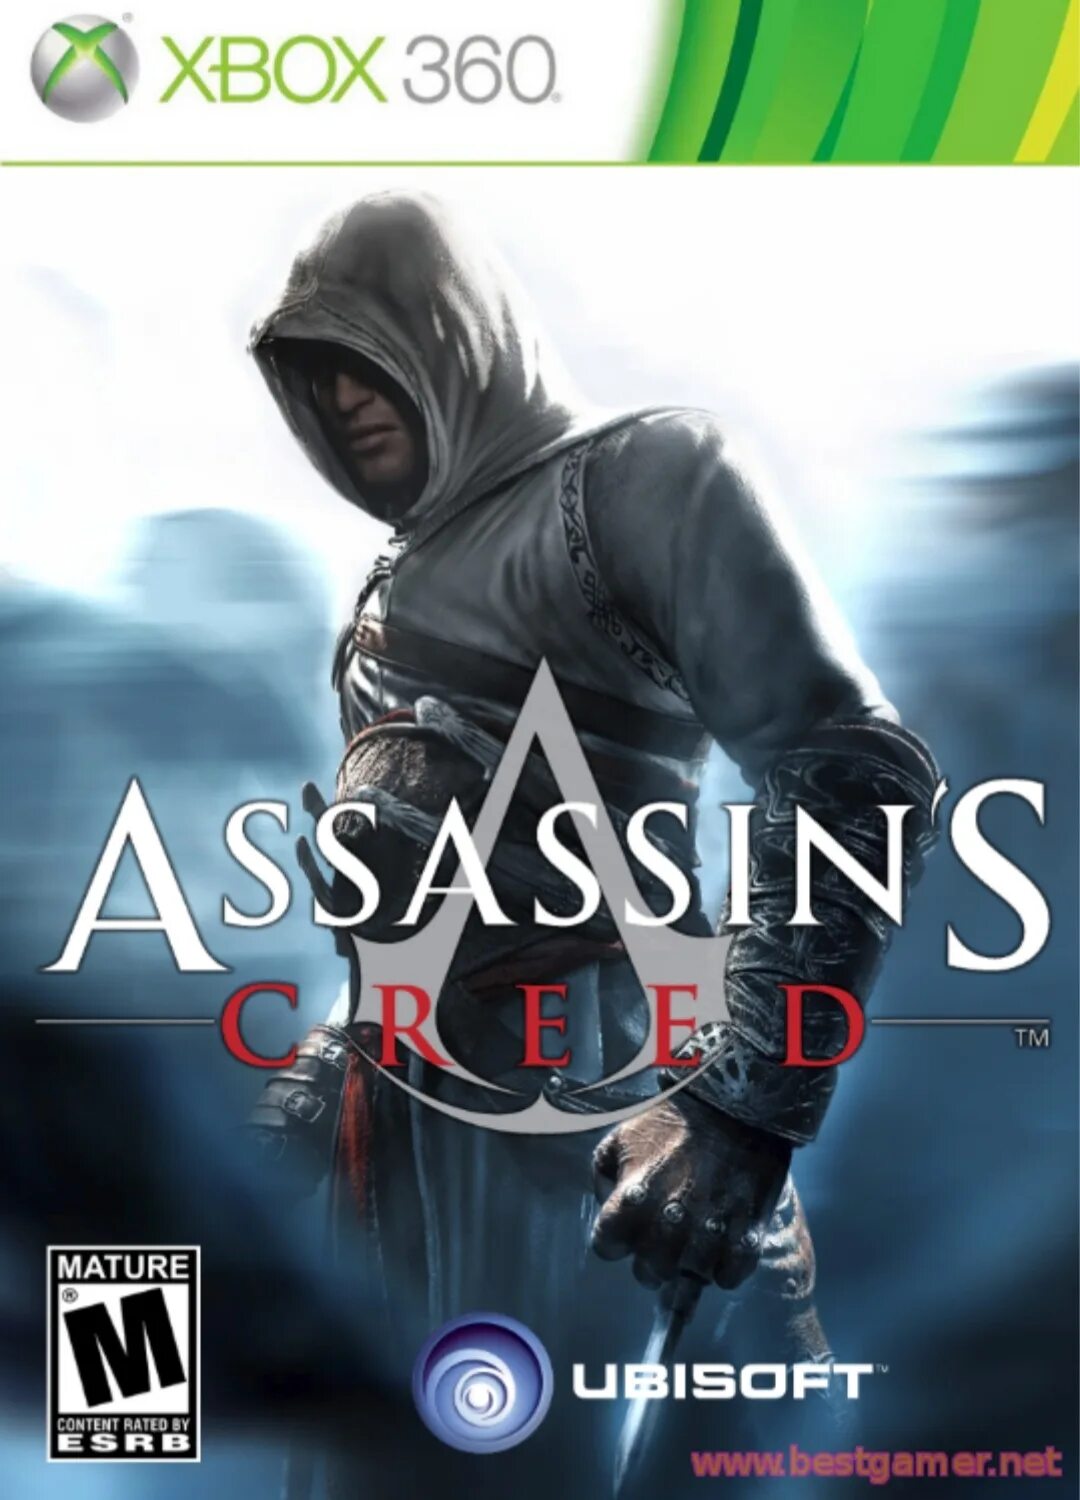 Ассасин хбокс. Ассасин Крид на Xbox 360. Assassin's Creed 1 Xbox 360 обложка. Ассасин 1 на Xbox 360. Ассасин Крид 1 на Xbox 360.